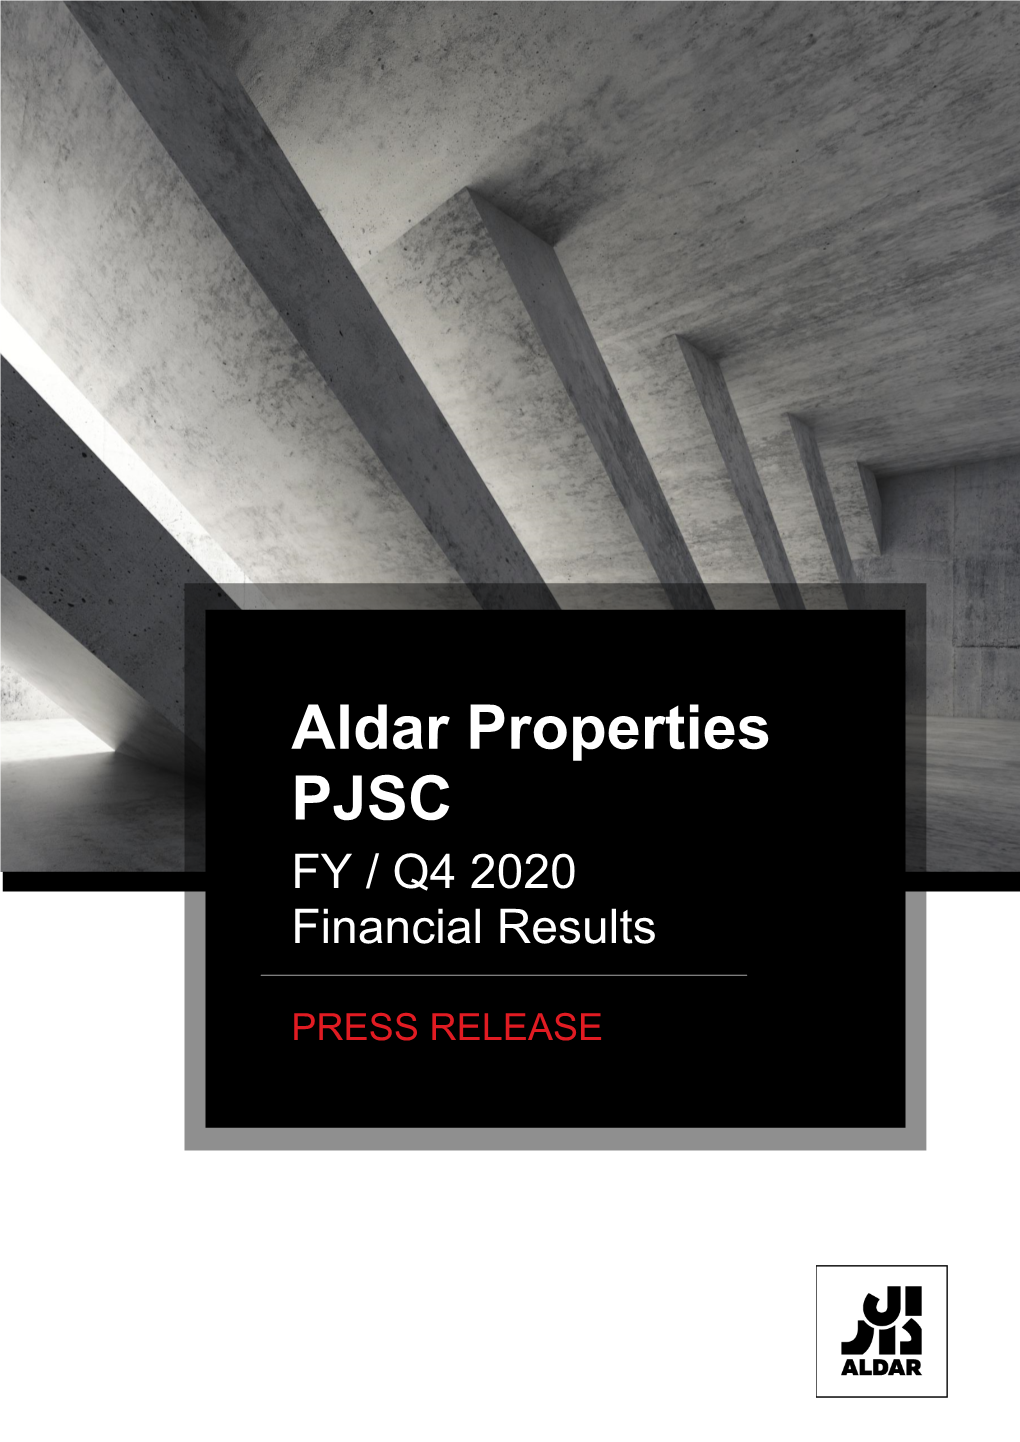 Aldar Properties PJSC FY / Q4 2020 Financial Results